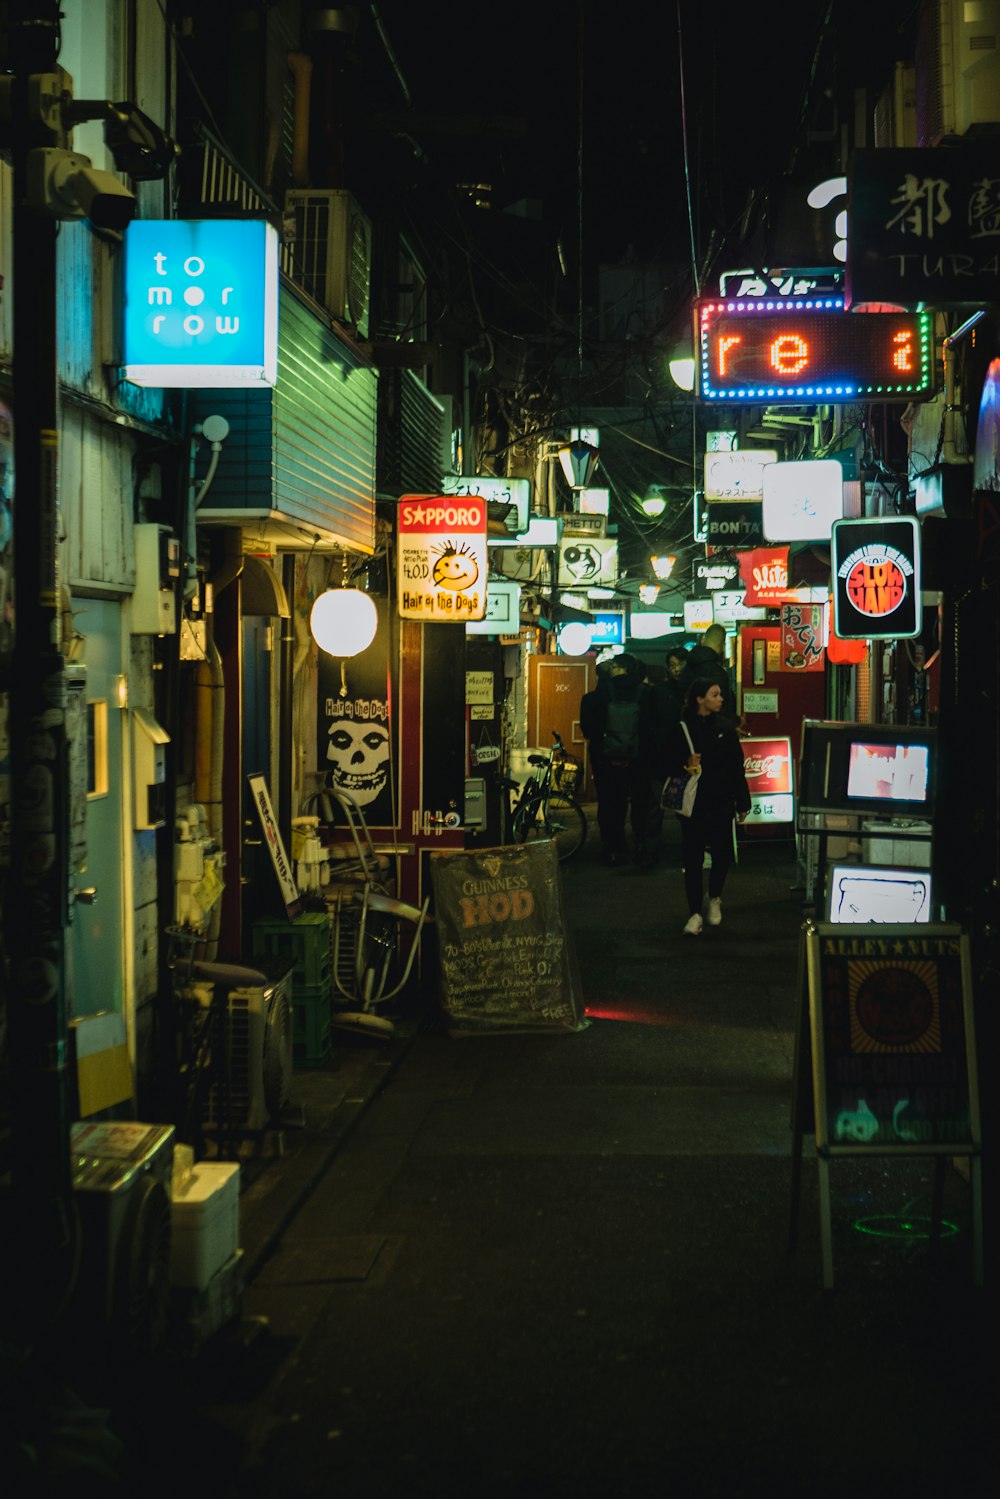 man in black jacket walking on street during nighttime